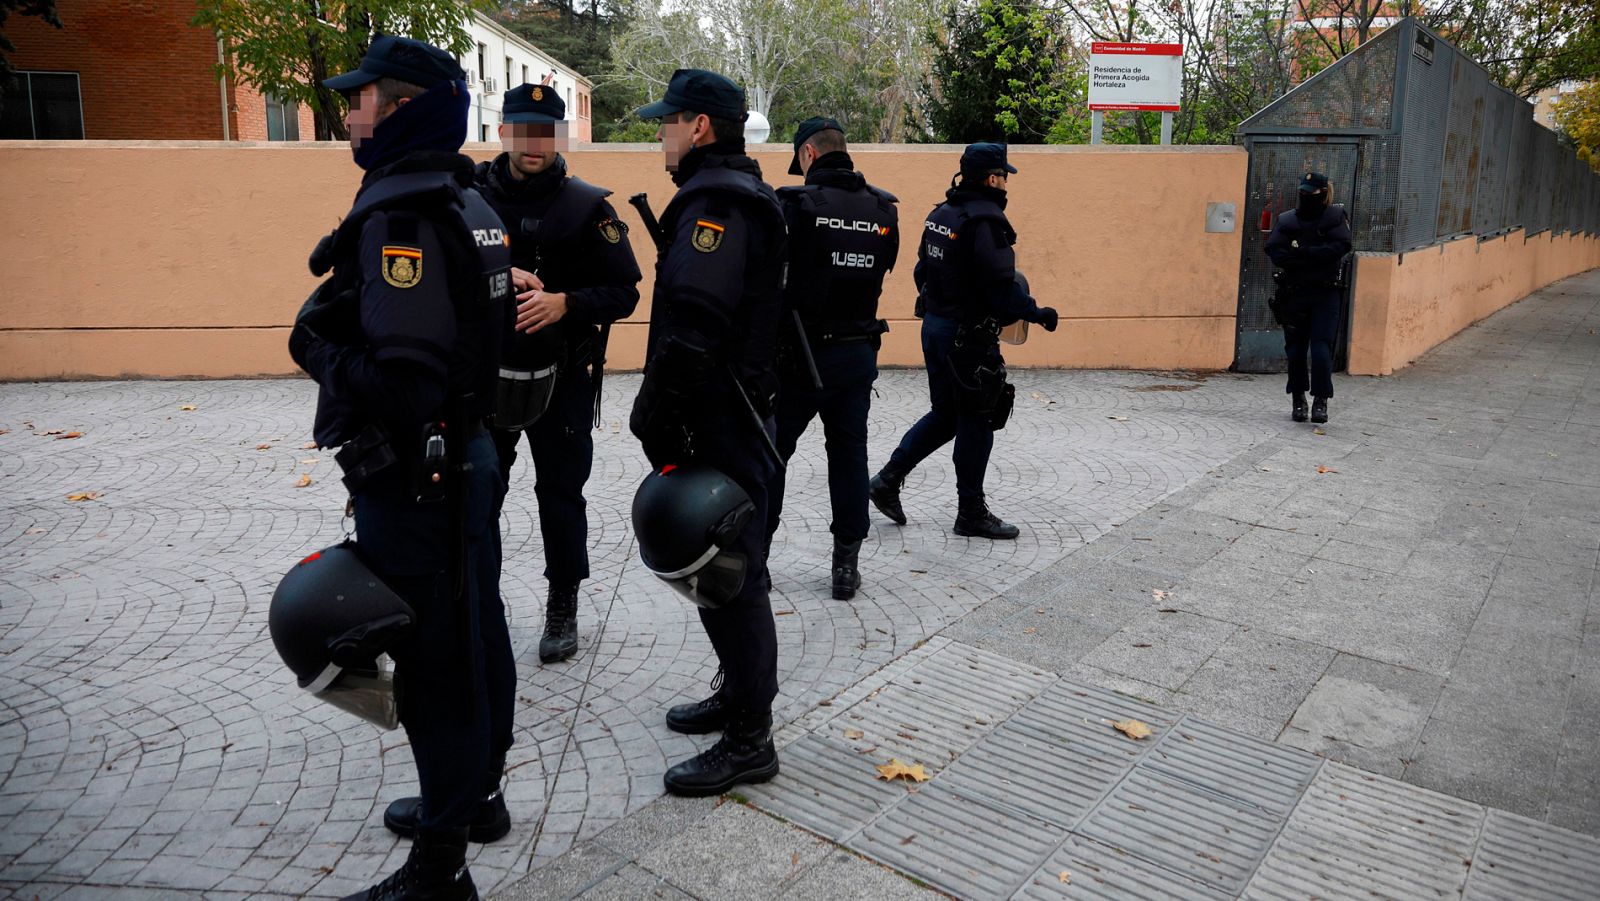 La Policía investiga la granada que ha aparecido en el centro de acogida de menores de Hortaleza